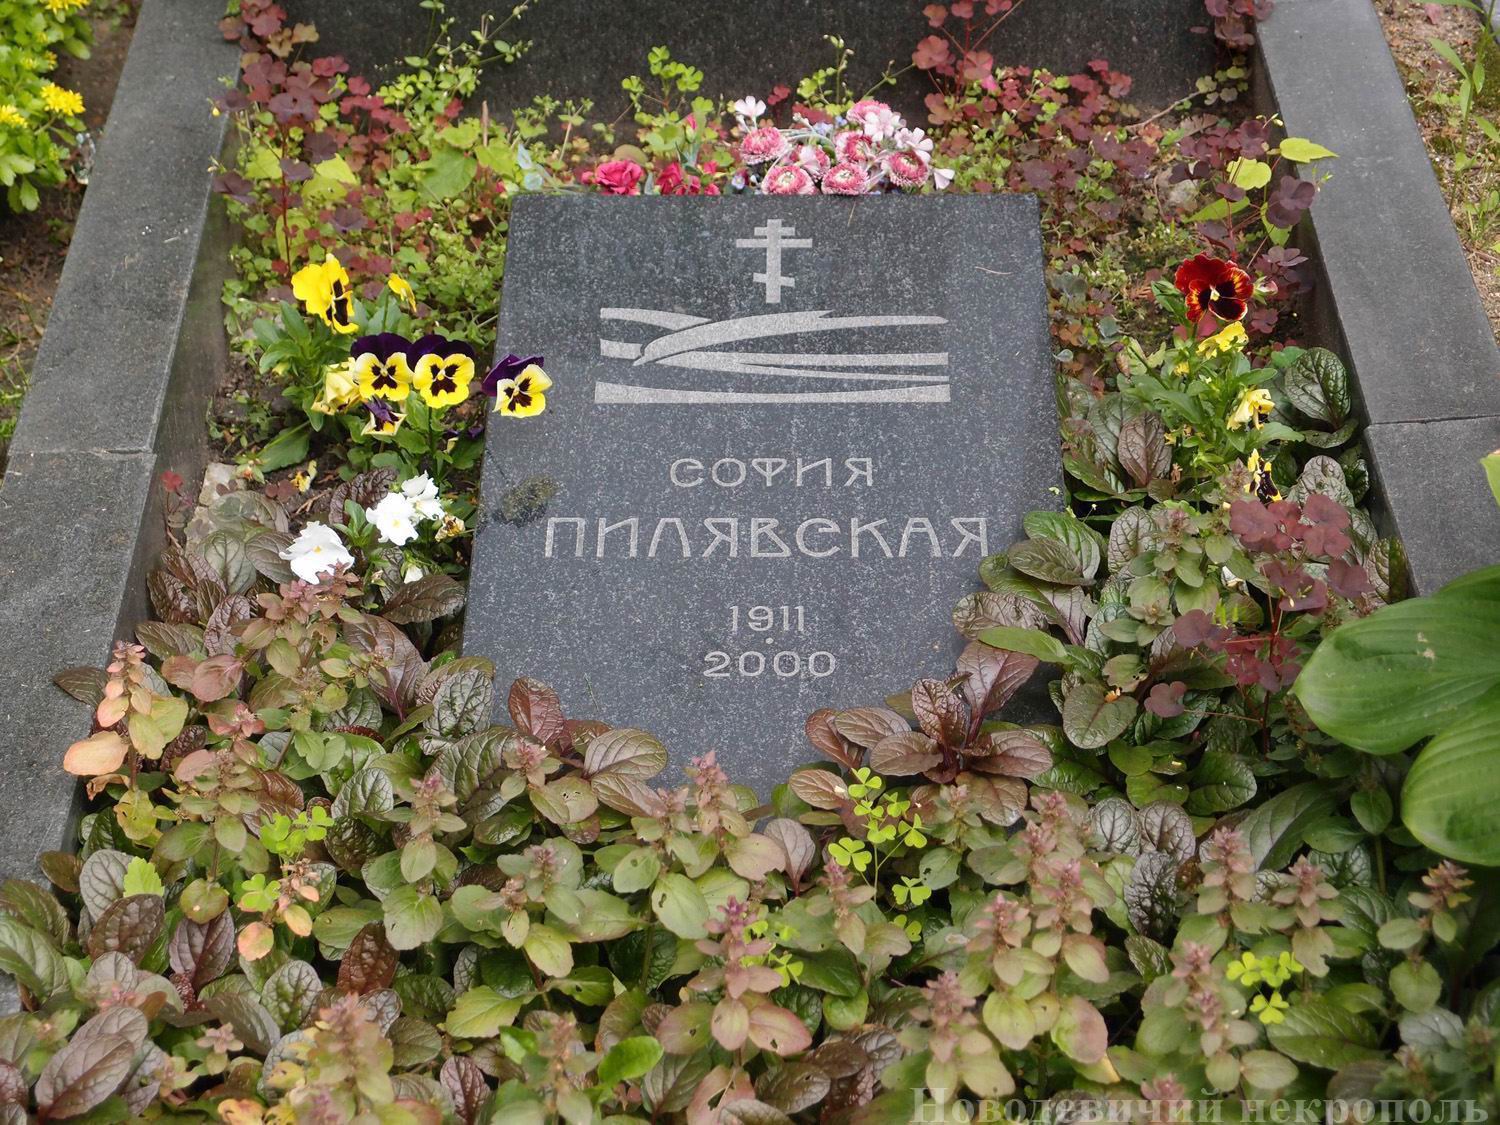 Памятник на могиле Пилявской С.С. (1911–2000), на Новодевичьем кладбище (2–15–18). Нажмите левую кнопку мыши, чтобы увидеть другой ракурс.